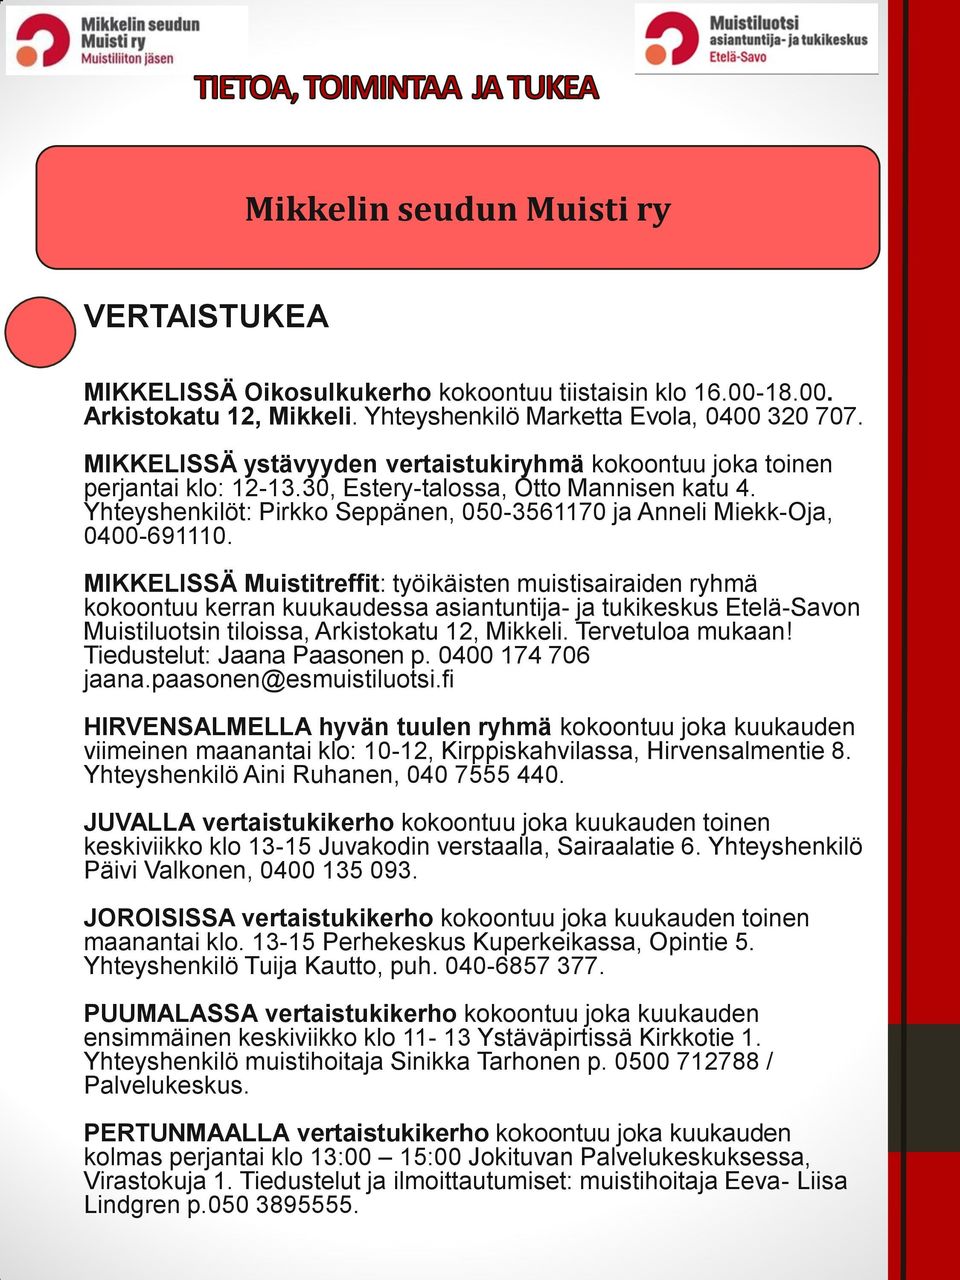 Yhteyshenkilöt: Pirkko Seppänen, 050-3561170 ja Anneli Miekk-Oja, 0400-691110.